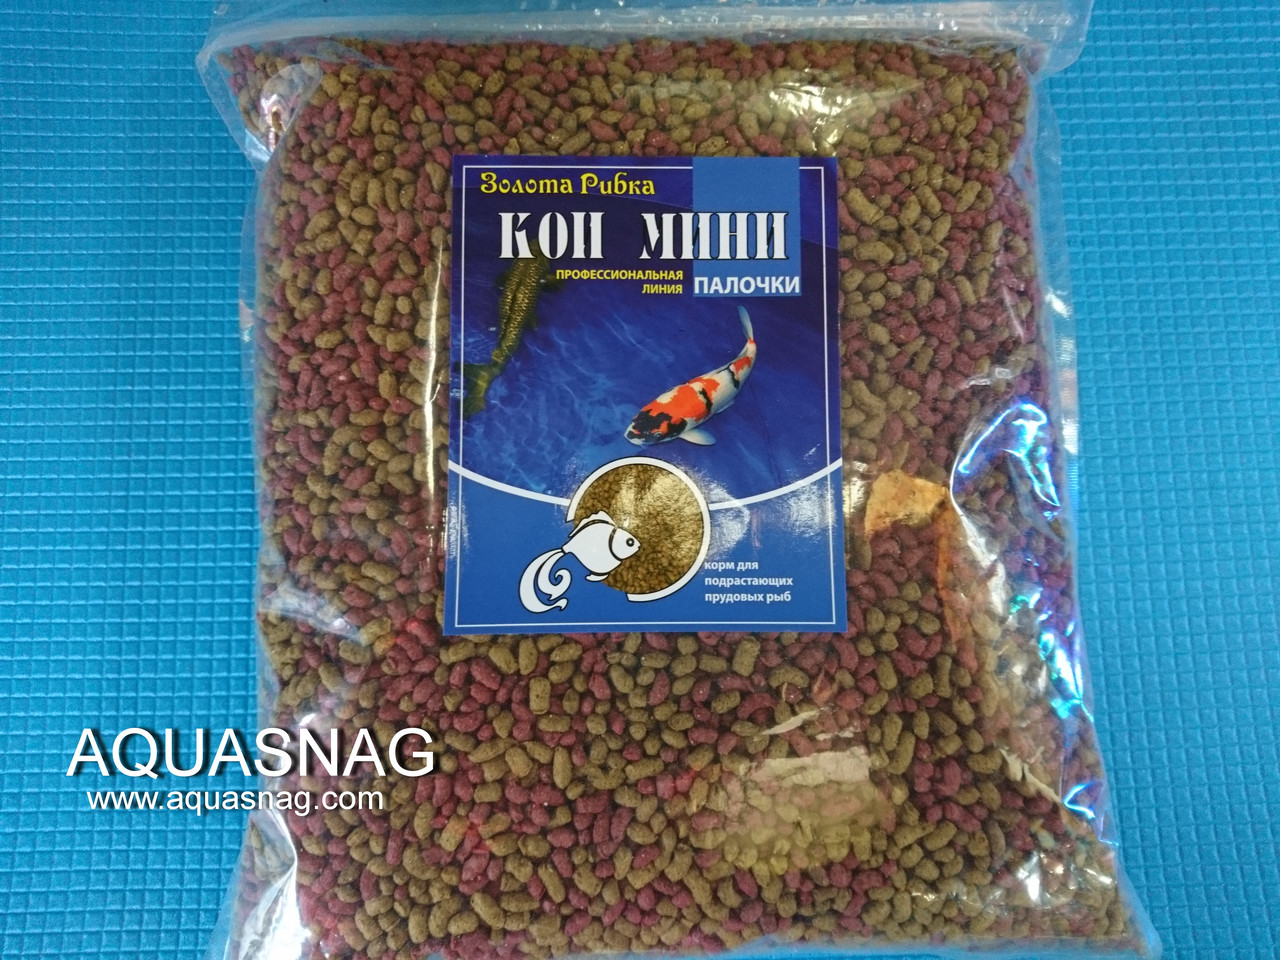 Коі Міні 1кг палички, основний вітамінізований корм для молоді коропів коі.